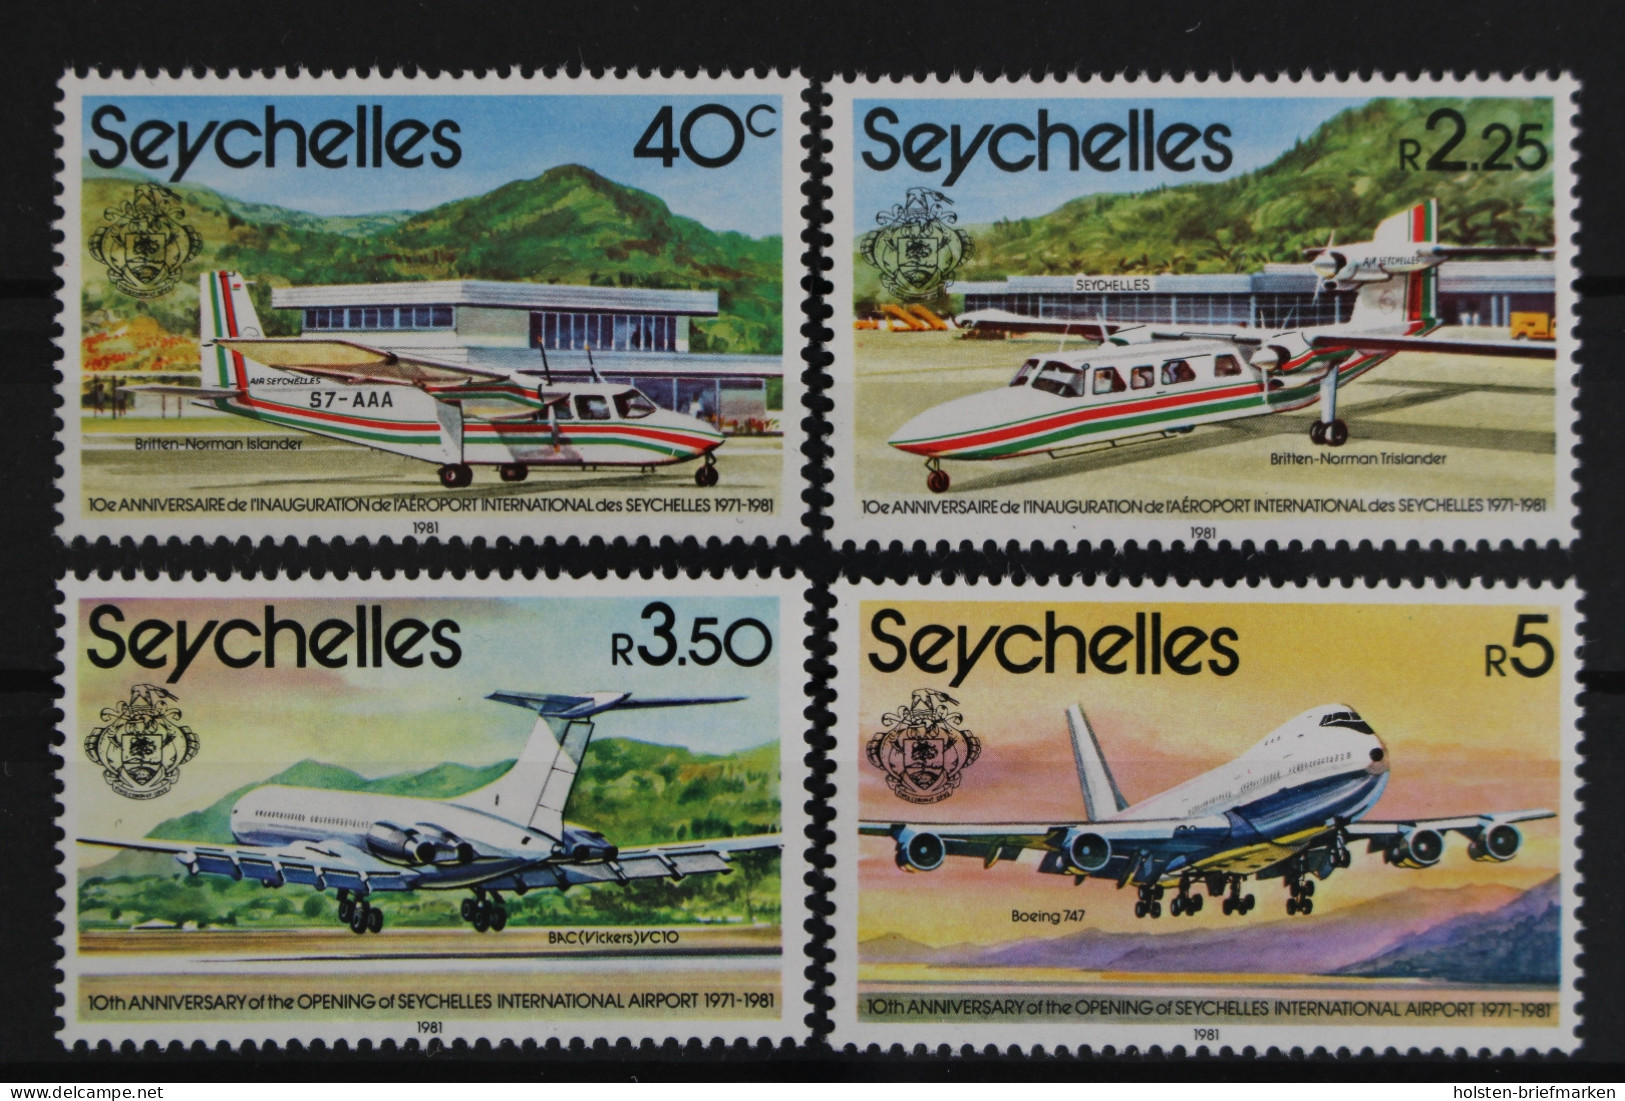 Seychellen, MiNr. 490-493, Flugzeuge, Postfrisch - Seychelles (1976-...)